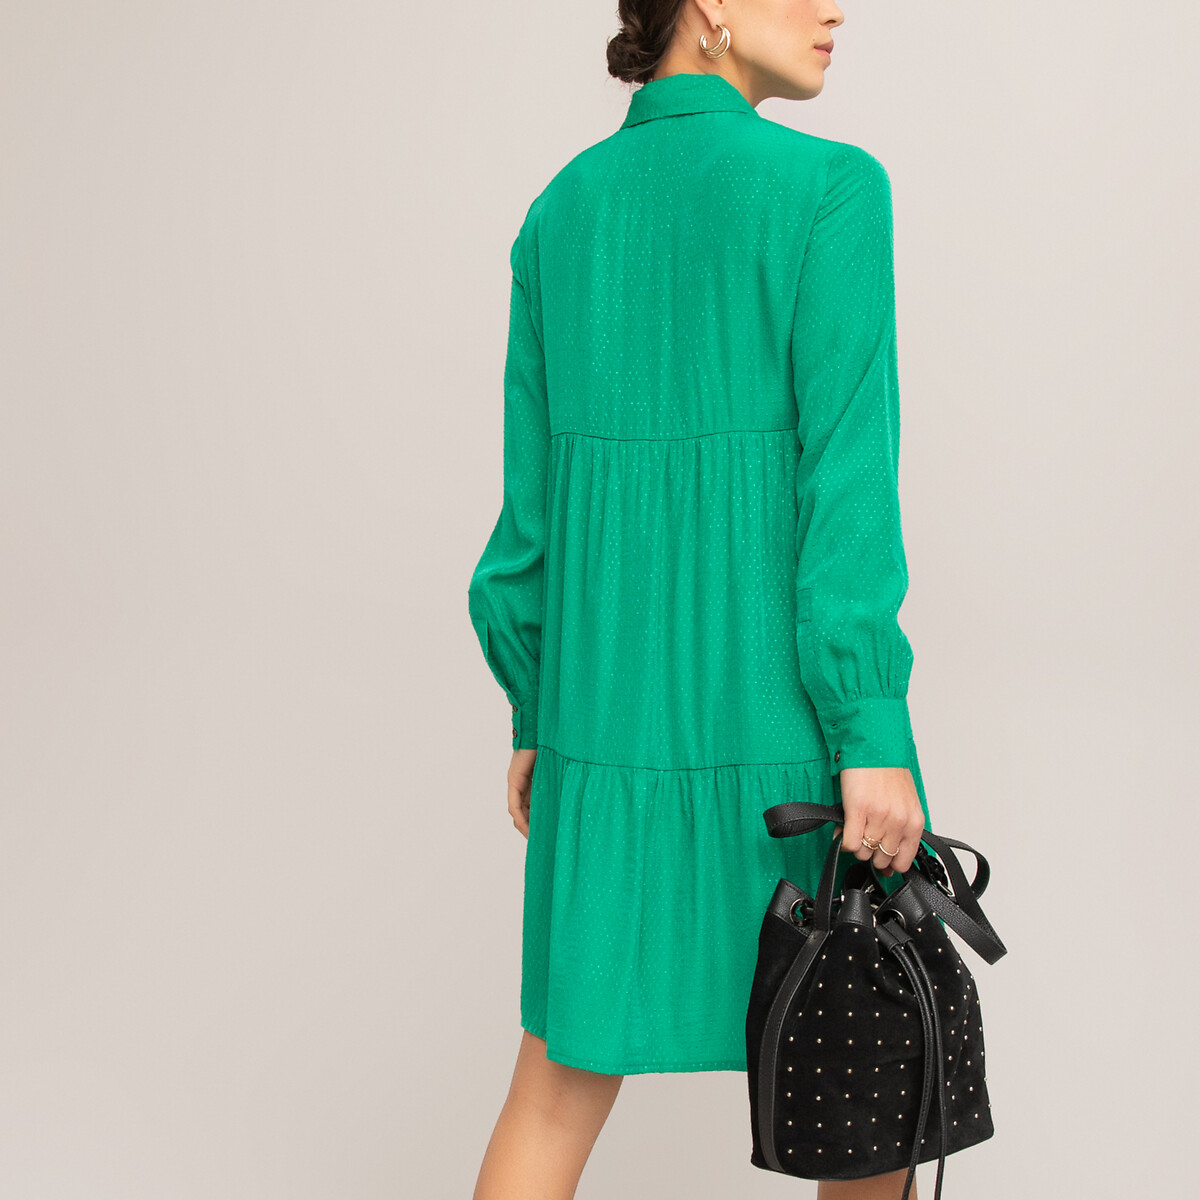 Платье LaRedoute Расклешенное короткое с длинными рукавами 46 (FR) - 52 (RUS) зеленый, размер 46 (FR) - 52 (RUS) Расклешенное короткое с длинными рукавами 46 (FR) - 52 (RUS) зеленый - фото 4